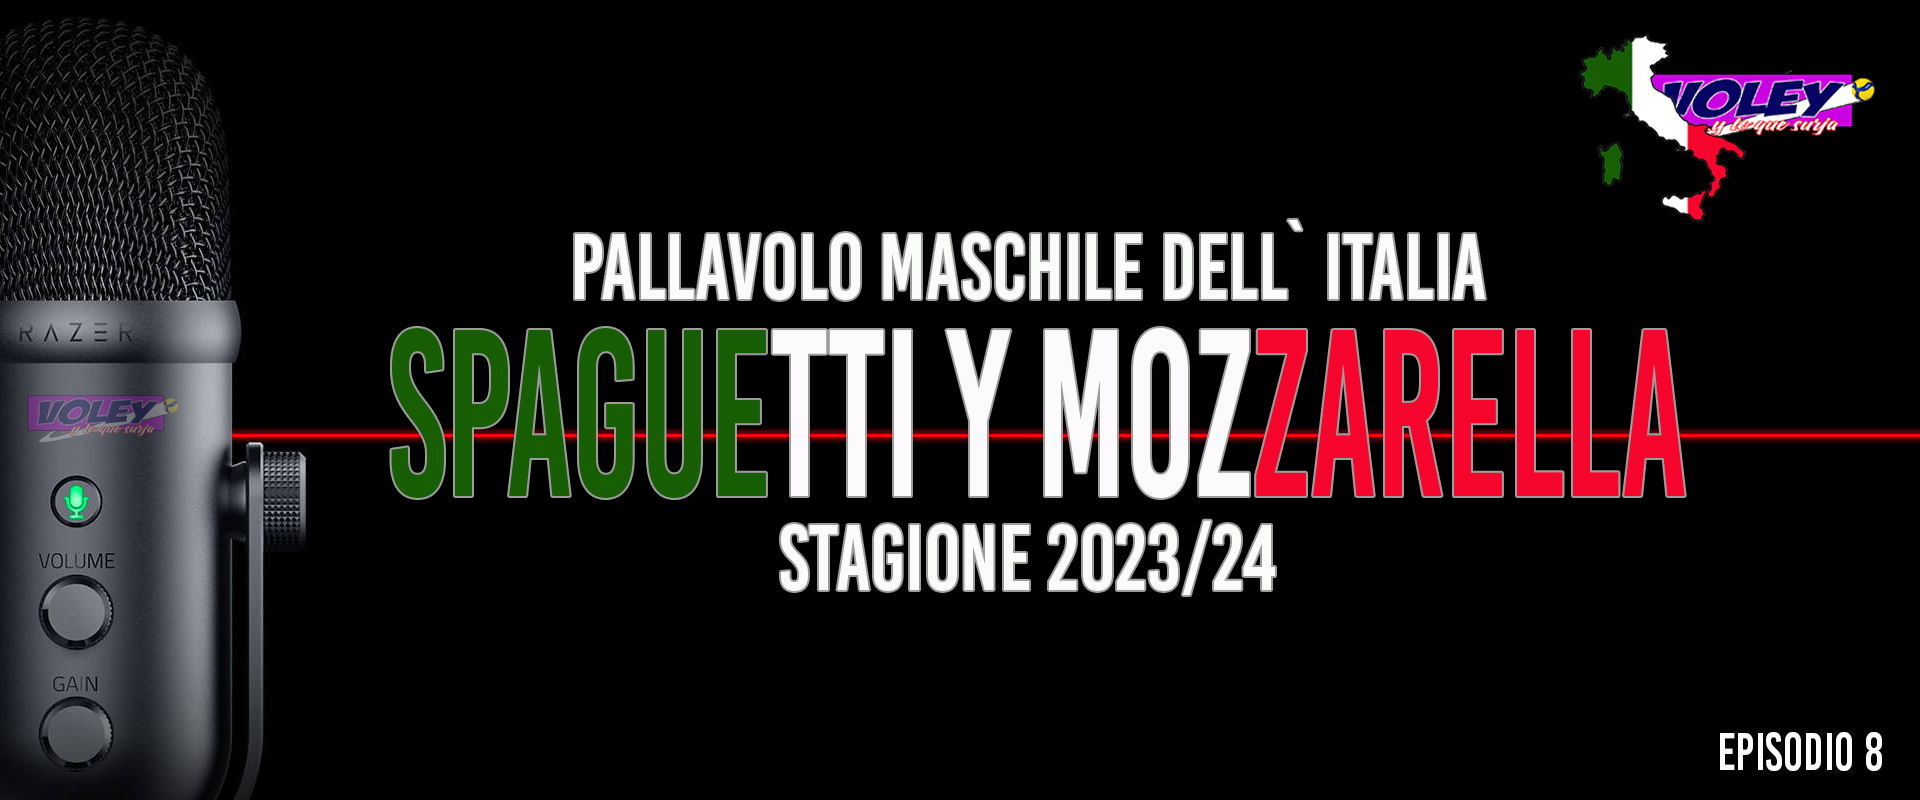 Quiero Spaguetti y Mozzarella. Episodio 8. A la 9ª fue la vencida y no quedan imbatidos (J9)